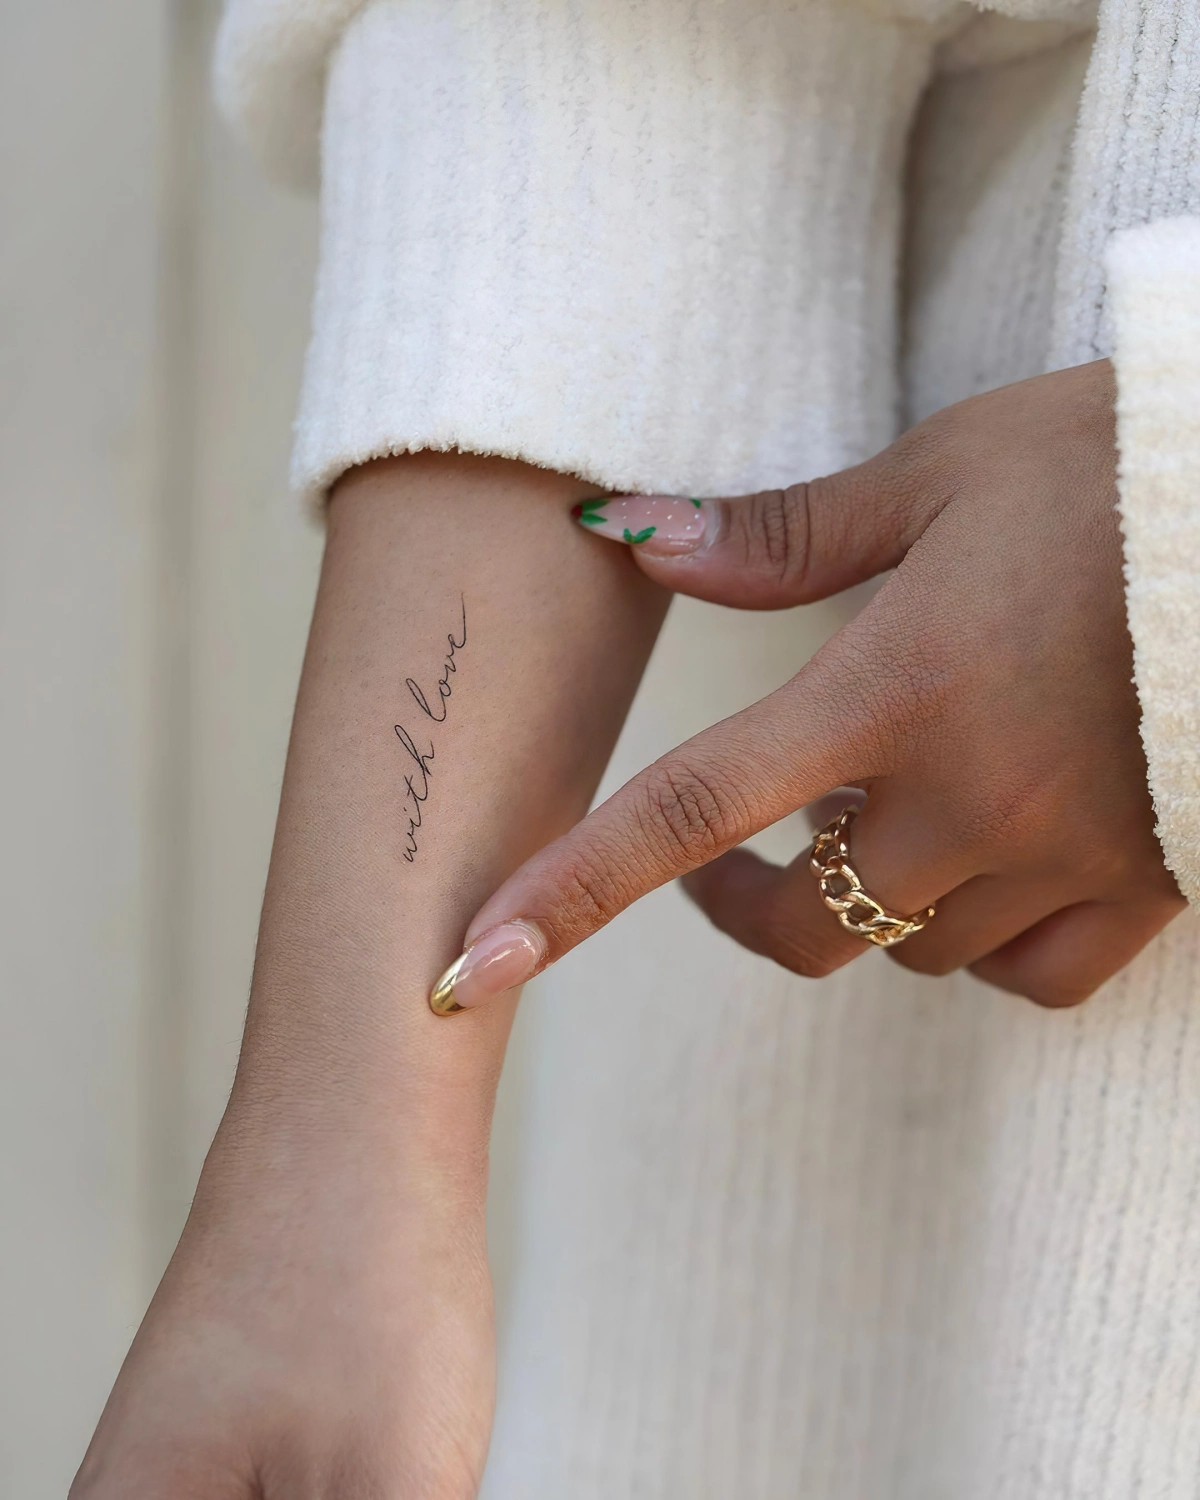 ecriture tatouage femme discret amour message bague or manucure french en couleur